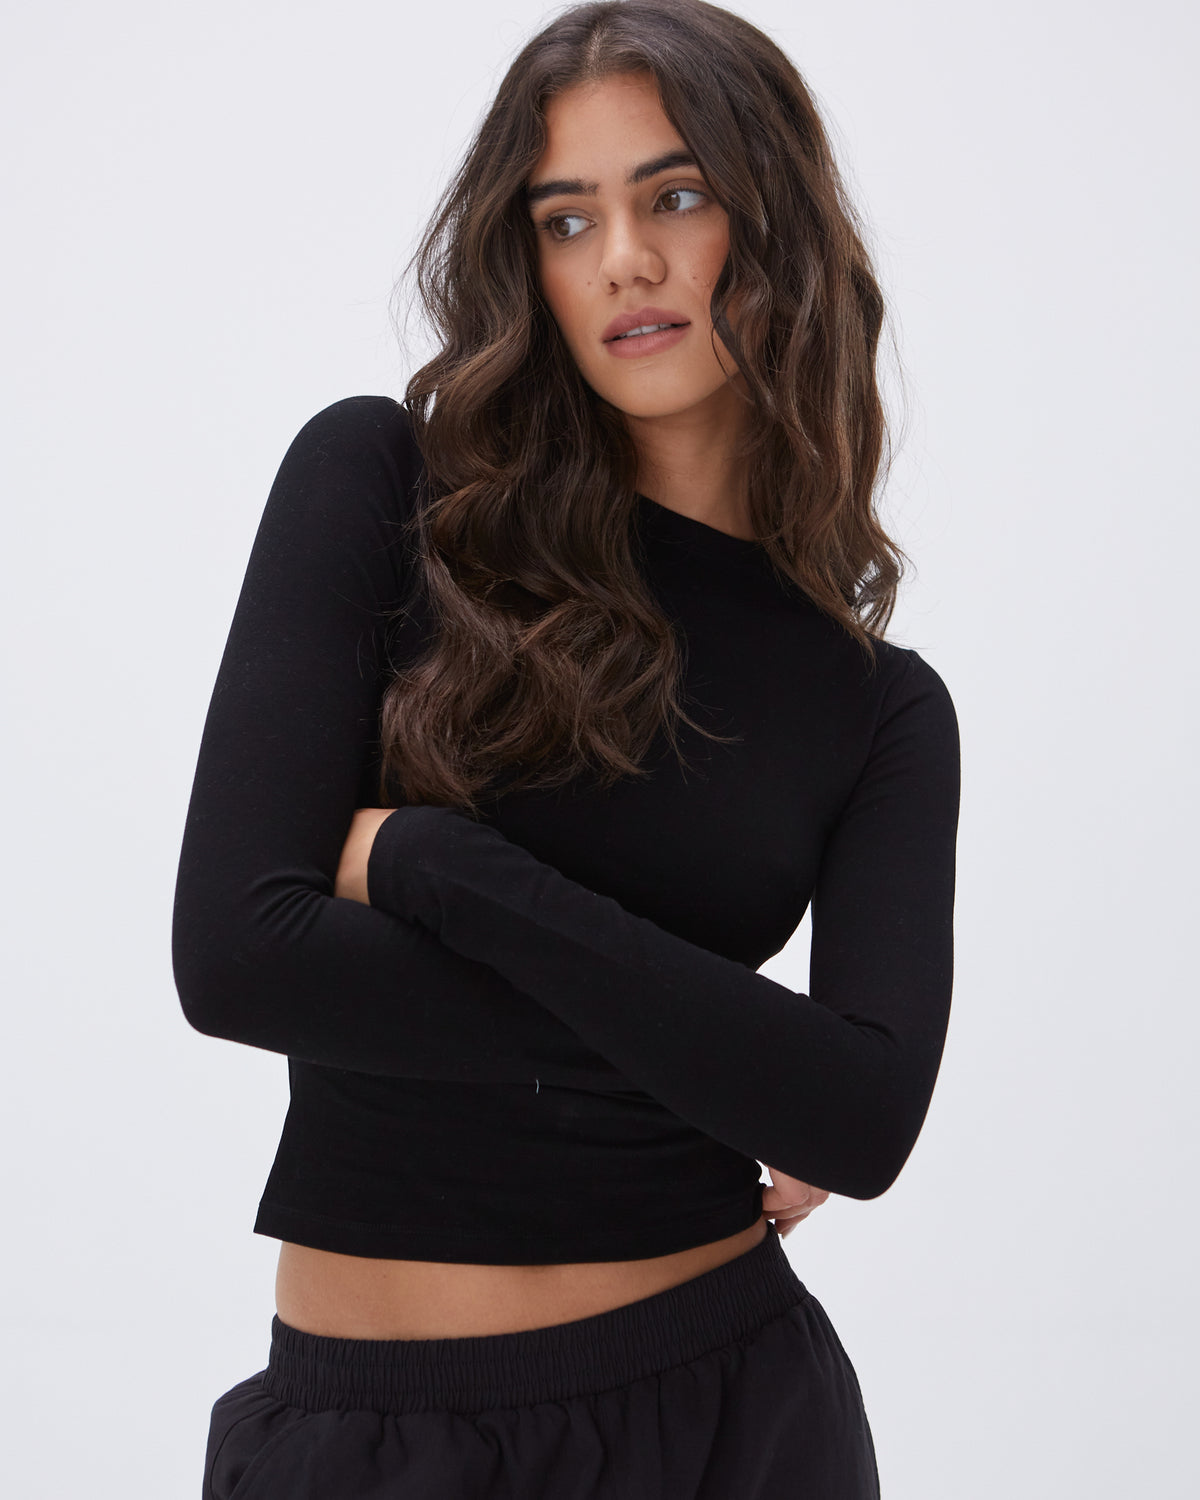 Women's Black Fitted Long Sleeve Top | Adanola